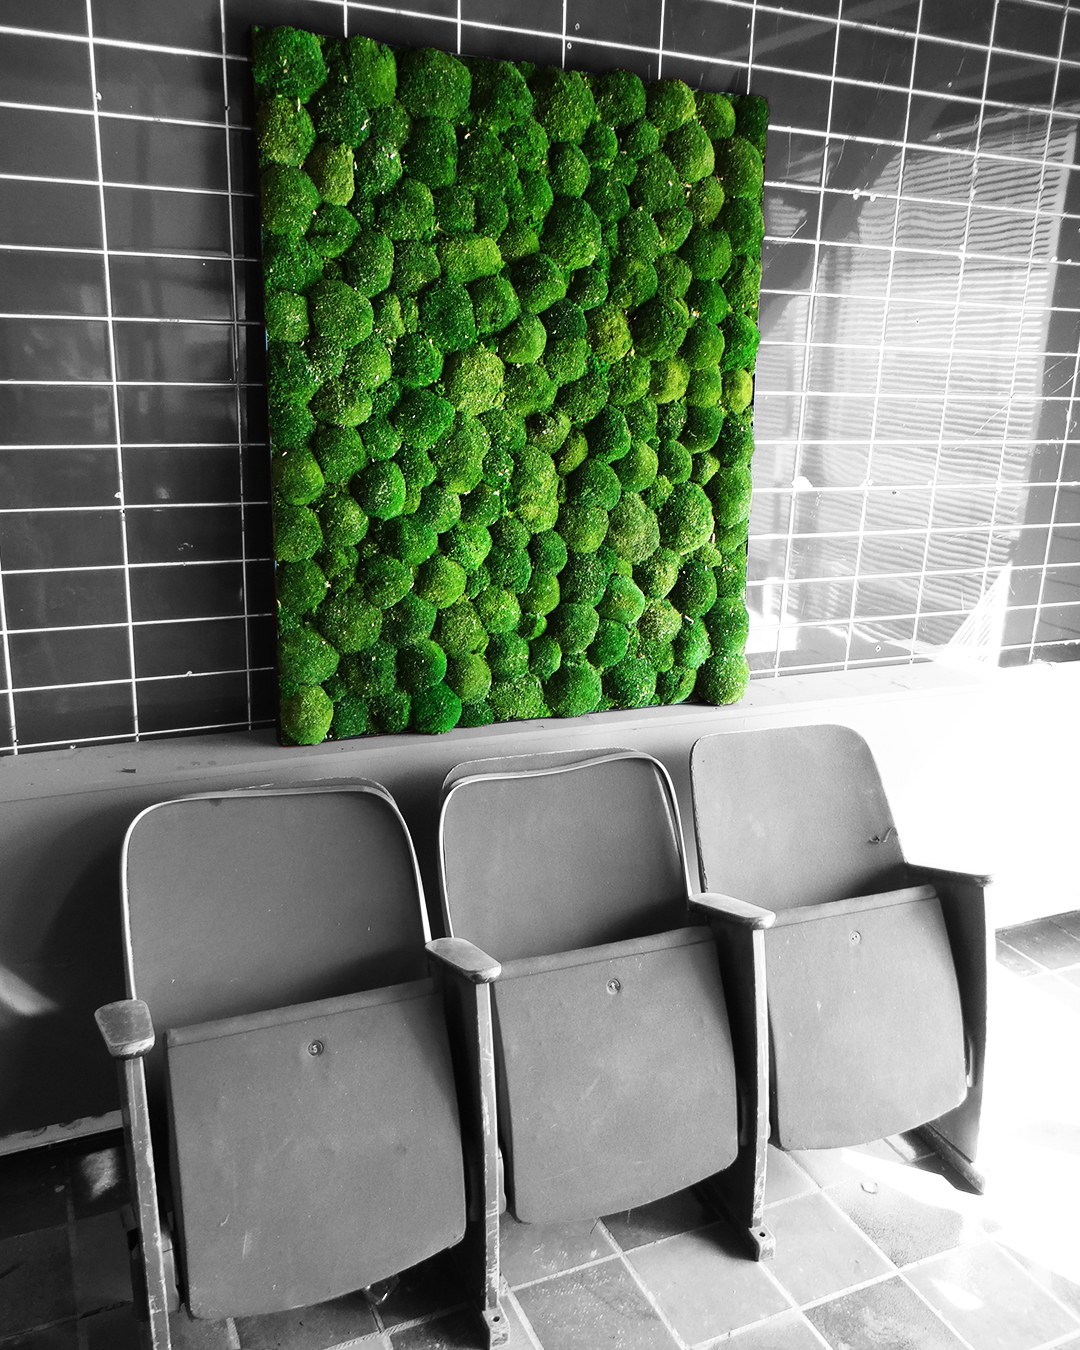 Moss Frame - Green Wall - Amsterdam